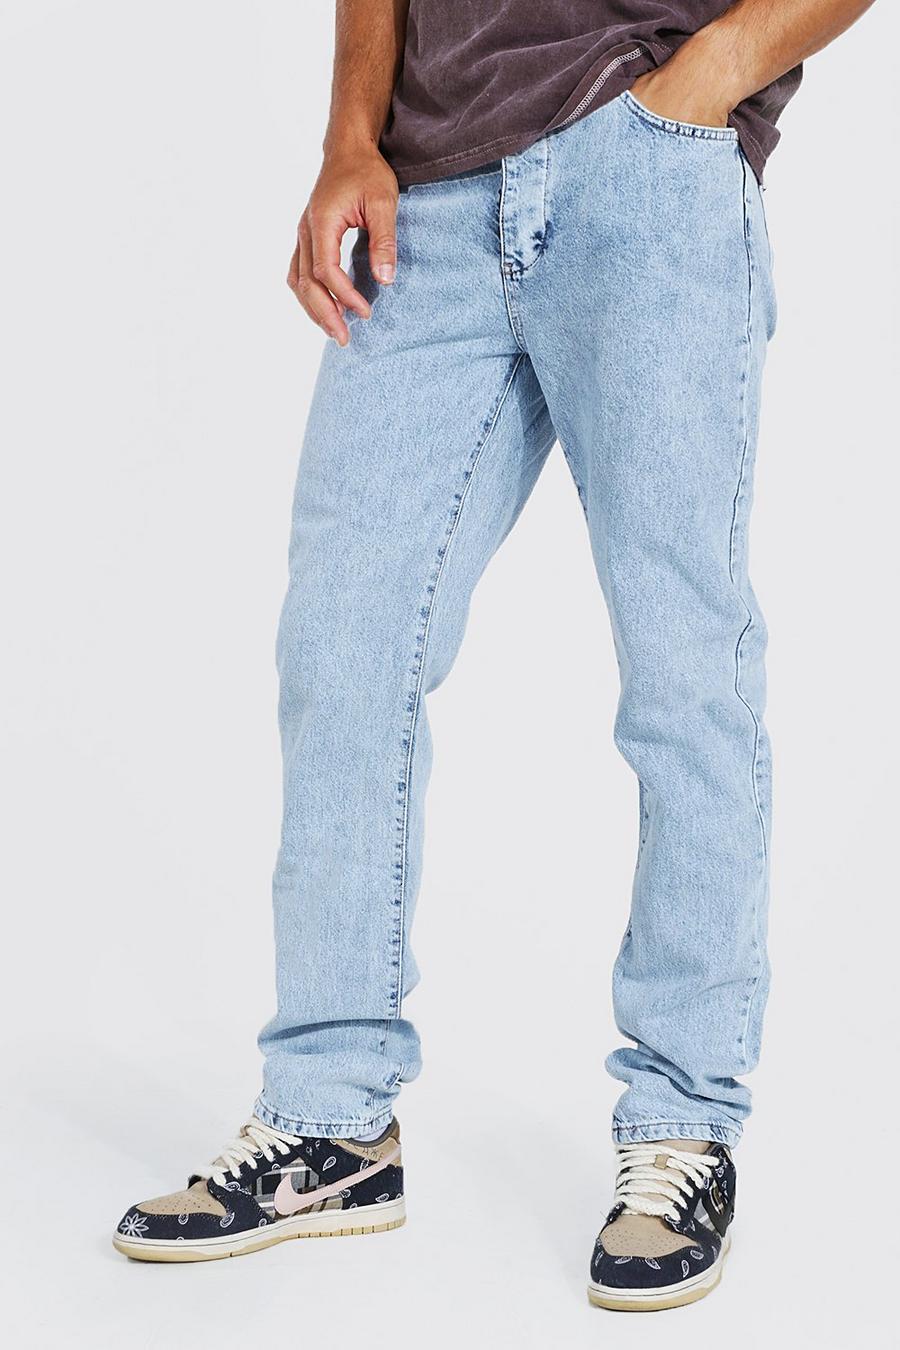 כחול בהיר ג'ינס בגזרה ישרה לנשים גבוהות image number 1